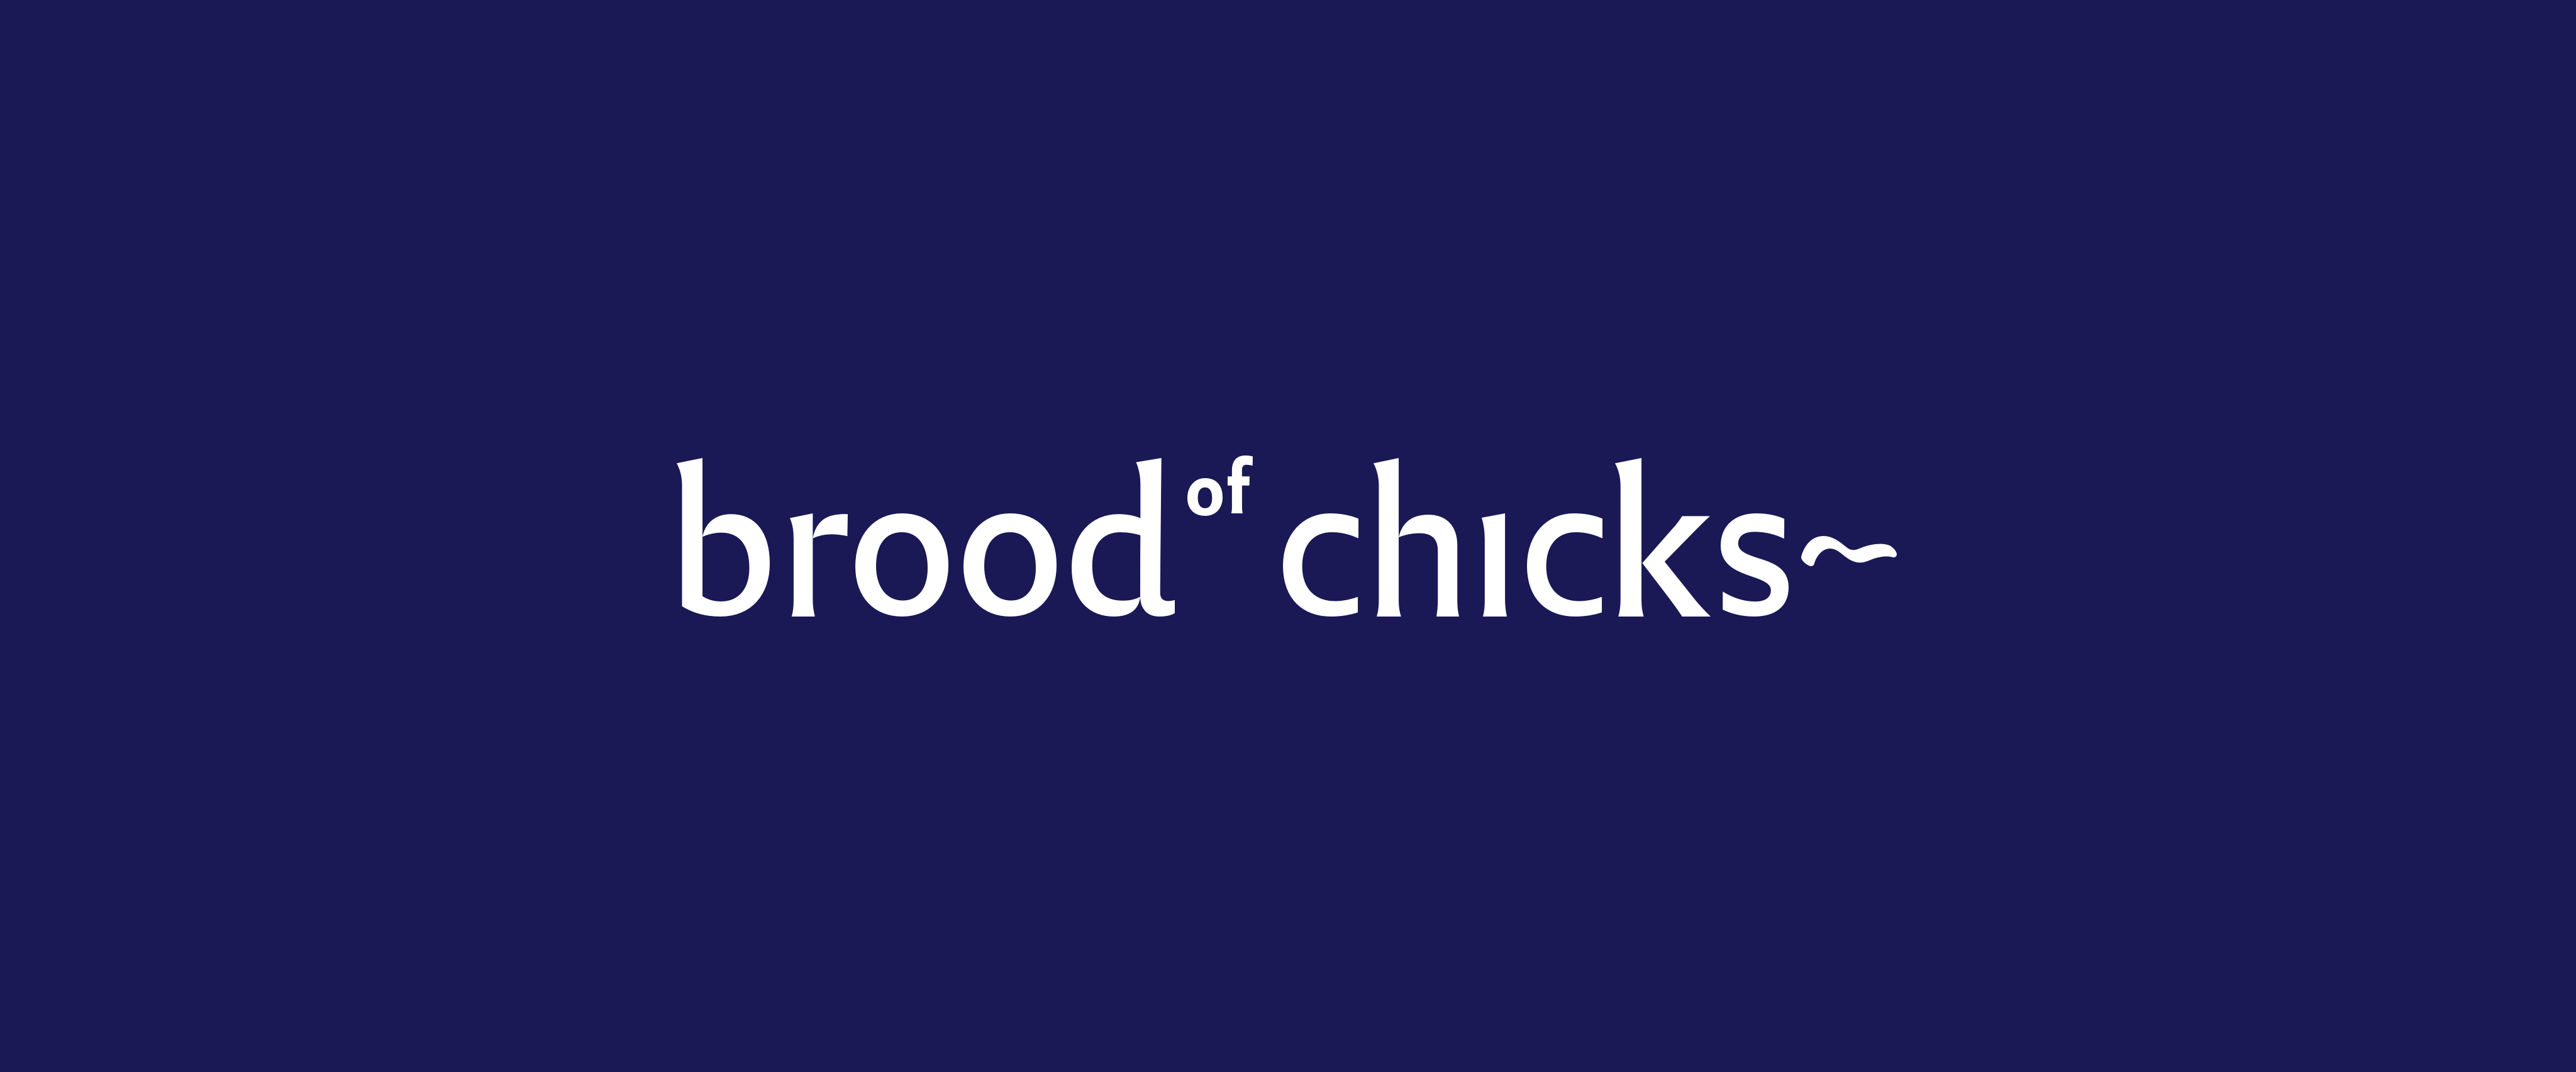 BroodOfChicks_TextLogo